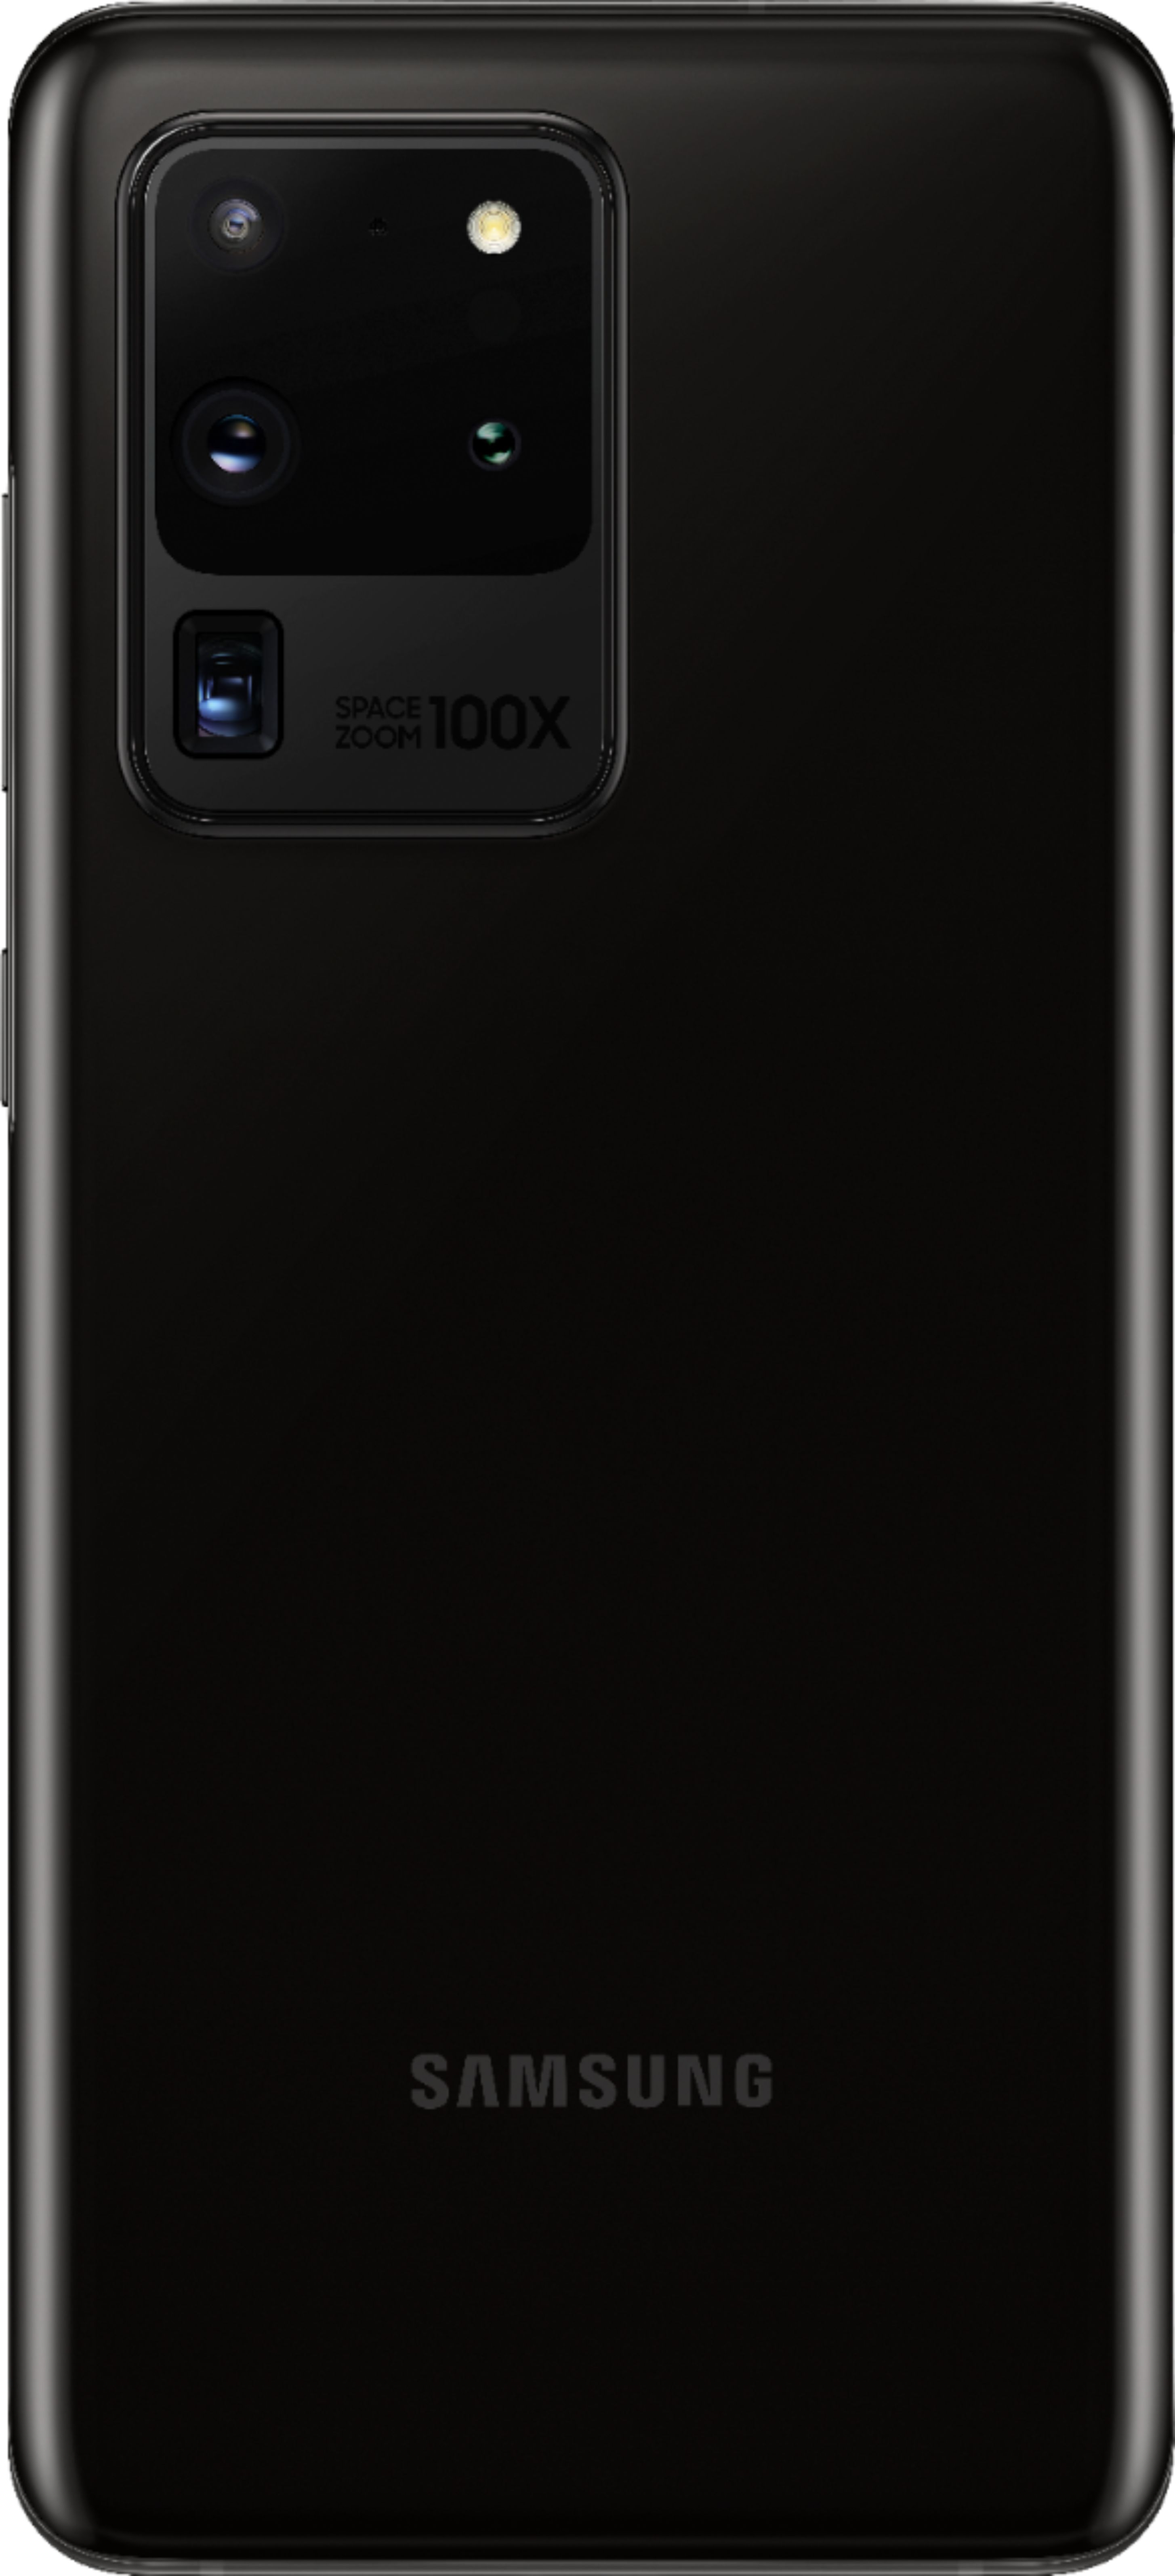 スマートフォン/携帯電話 スマートフォン本体 Best Buy: Samsung Galaxy S20 Ultra 5G Enabled 128GB (Unlocked) Cosmic Black  SM-G988UZKAXAA